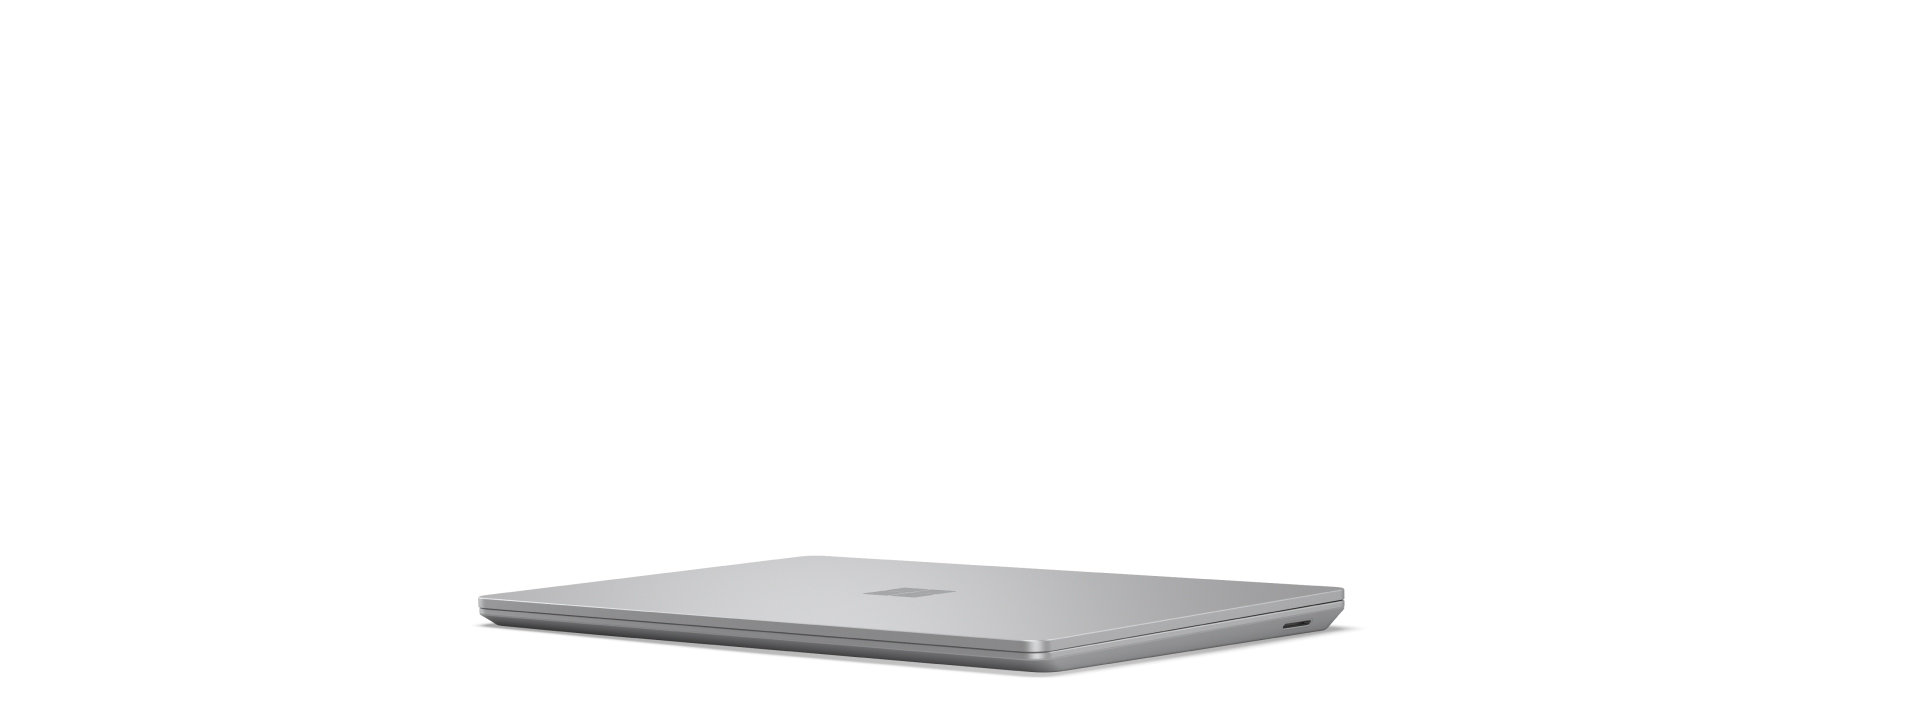 Fotograma inicial para un dispositivo Surface Laptop Go 3 rotando, que se abre y cierra mientras se muestran todos sus ángulos.